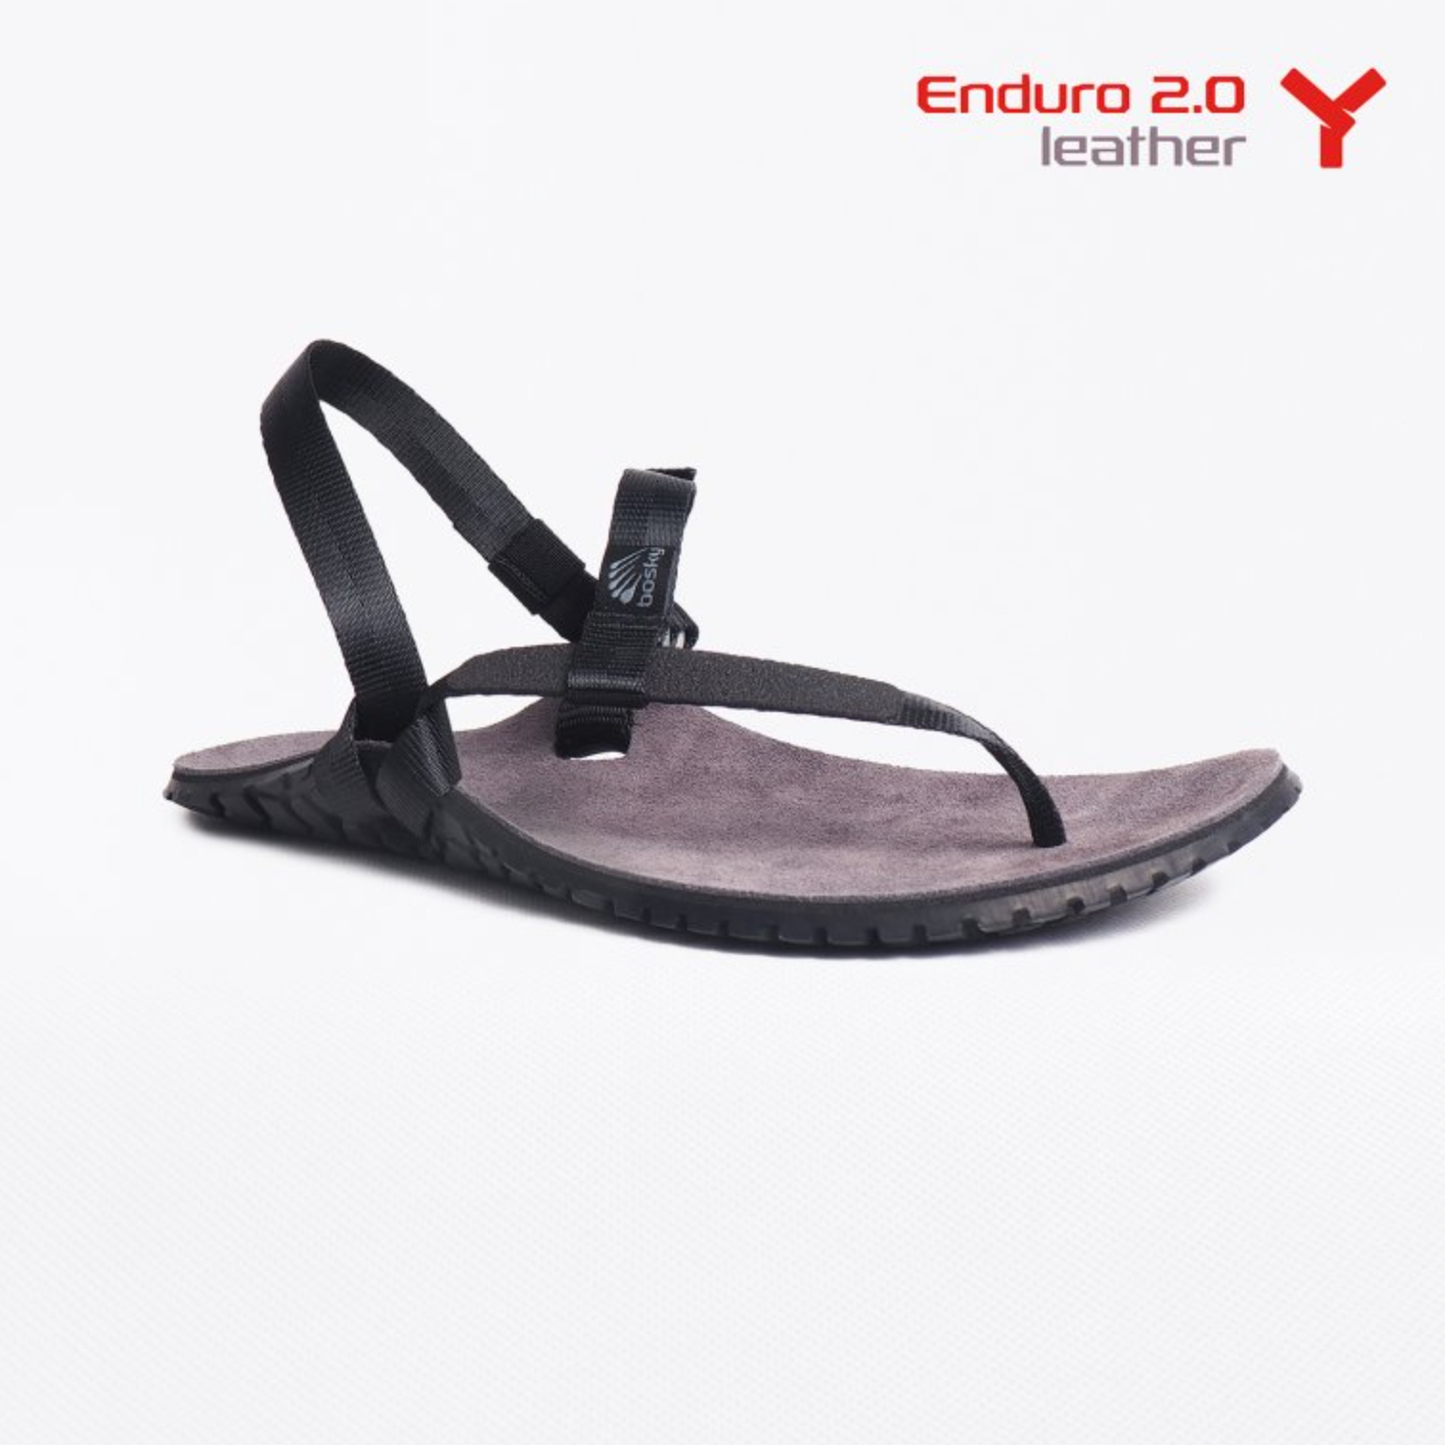 Bosky Enduro Leather 2.0 Y barfods sandaler til kvinder og mænd i farven black, yderside